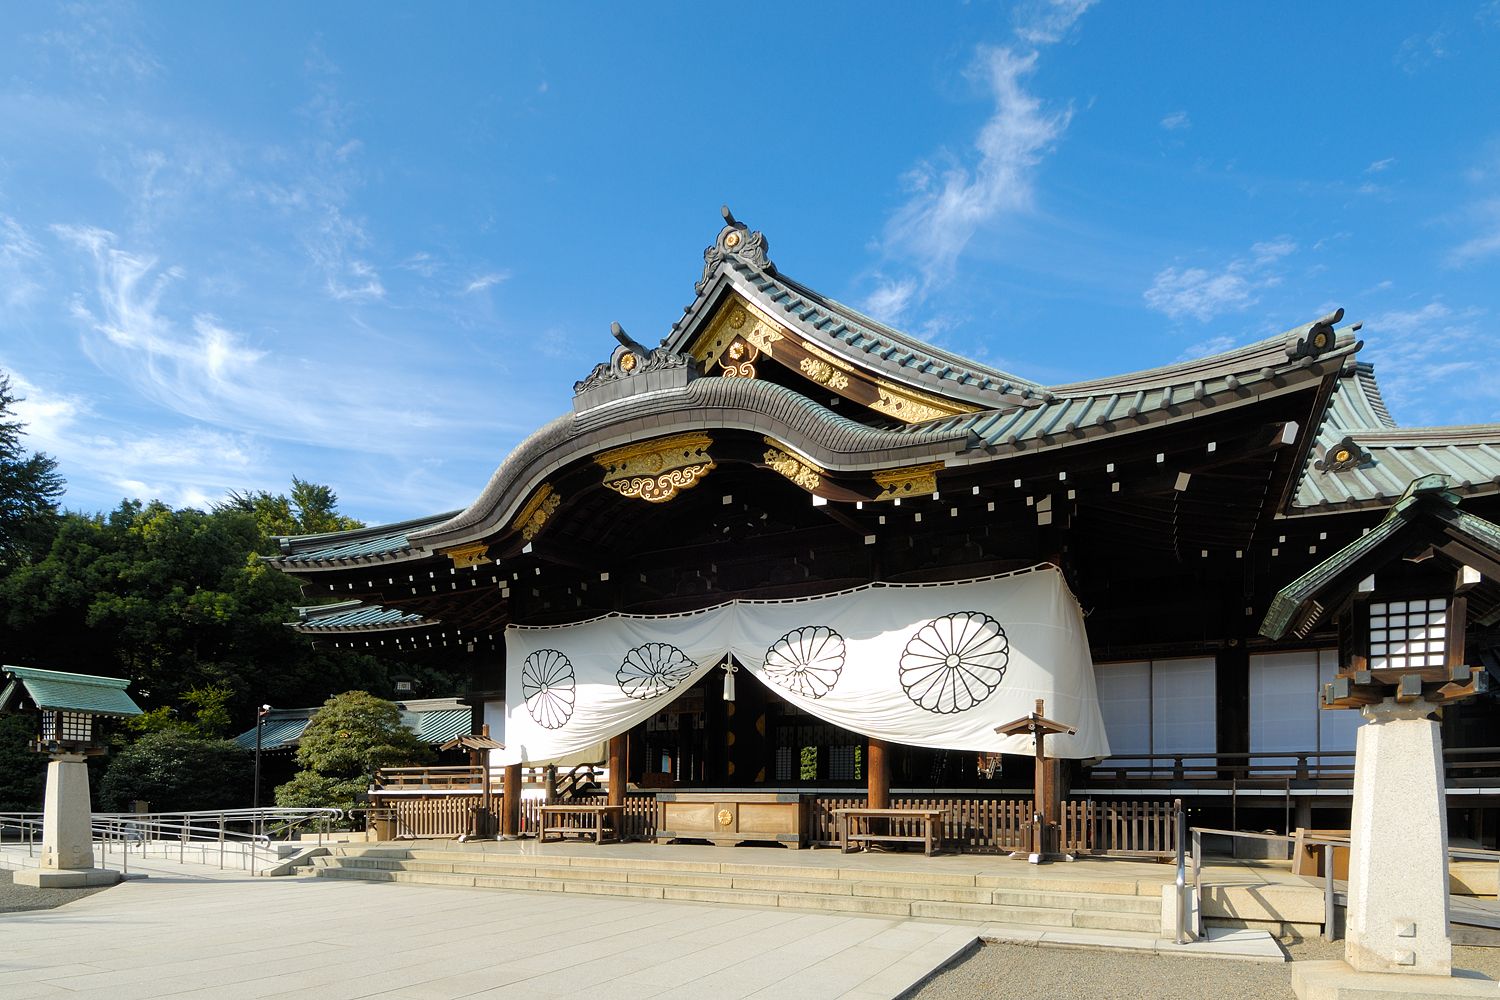 真っ白な神社幕で拝殿を飾っている靖国神社の写真